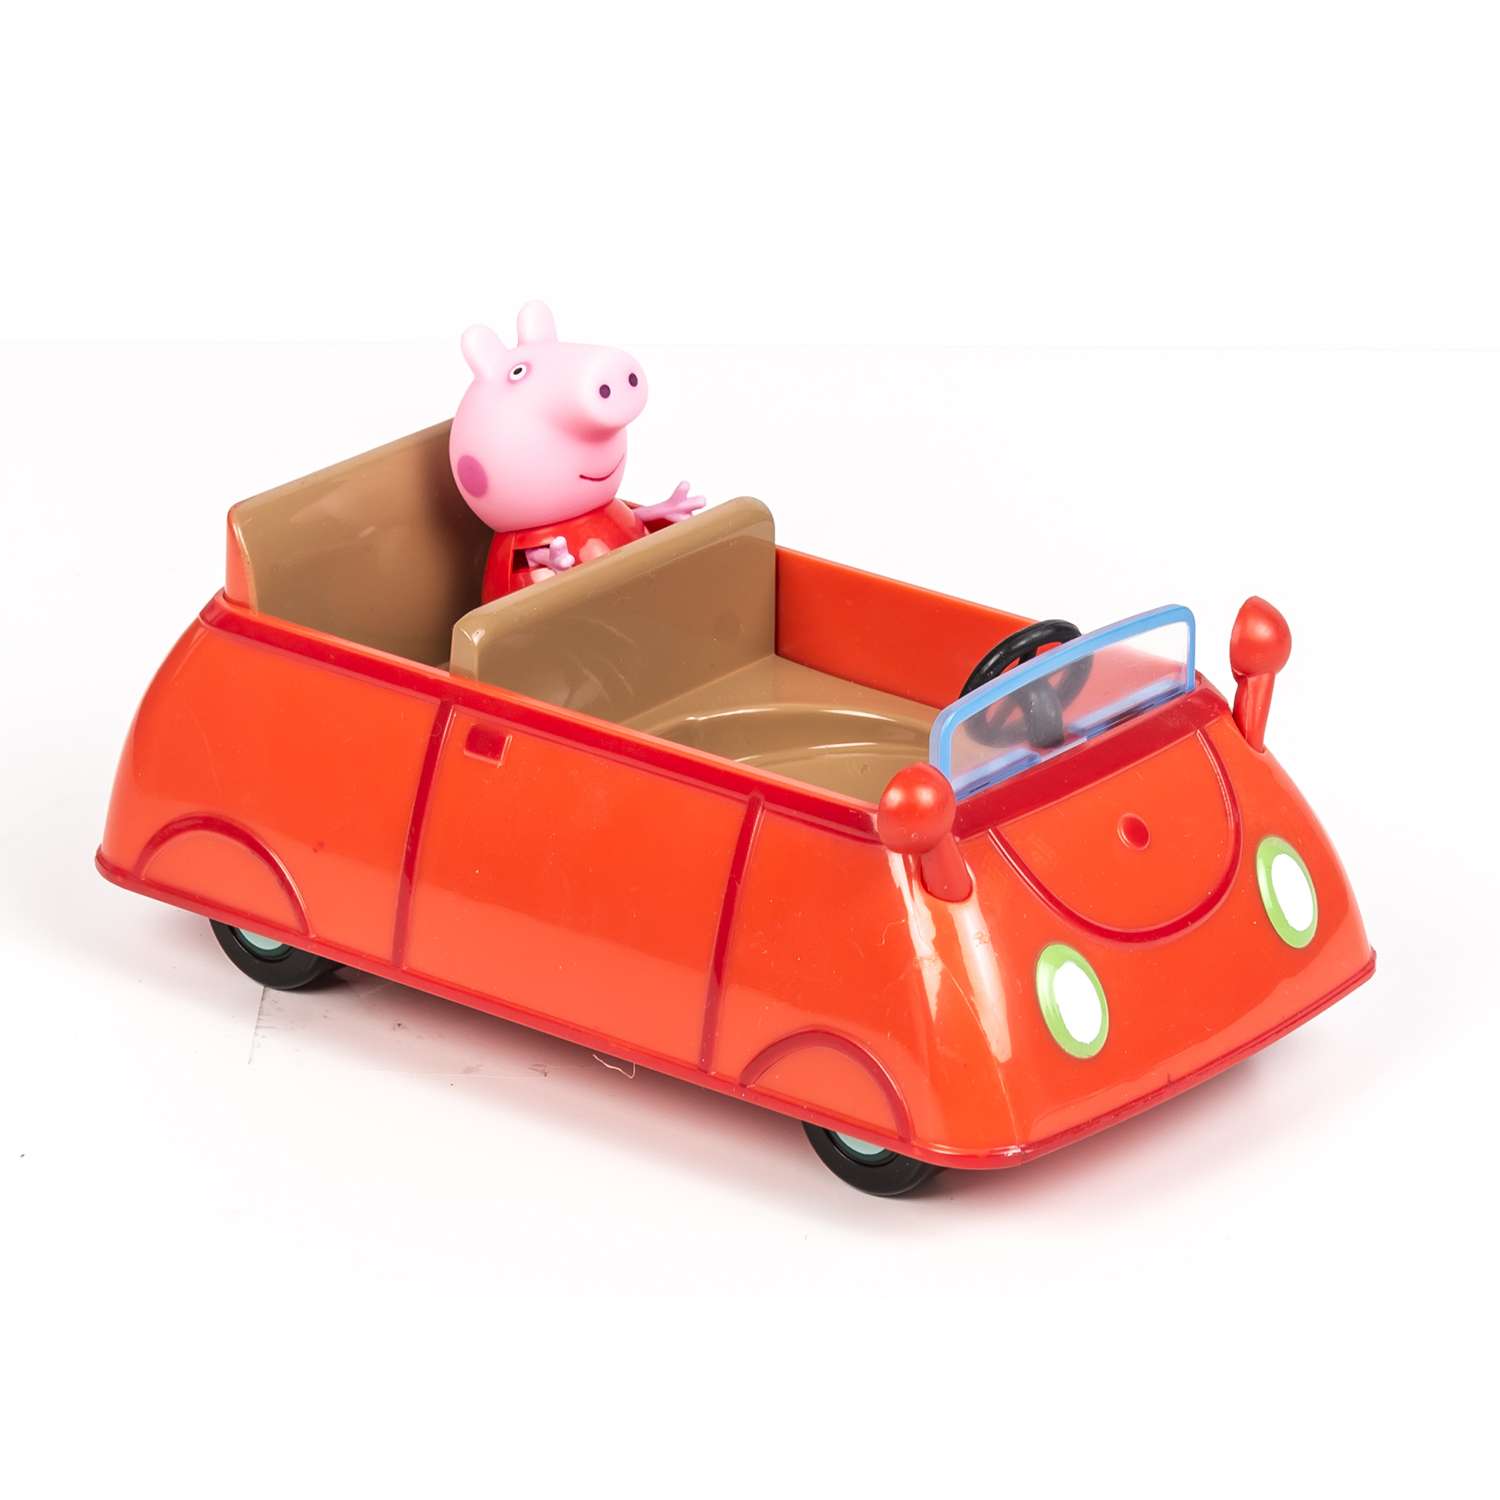 Игровой набор Свинка Пеппа машина Пеппы (фигурка Пеппы, машинка) - фото 3